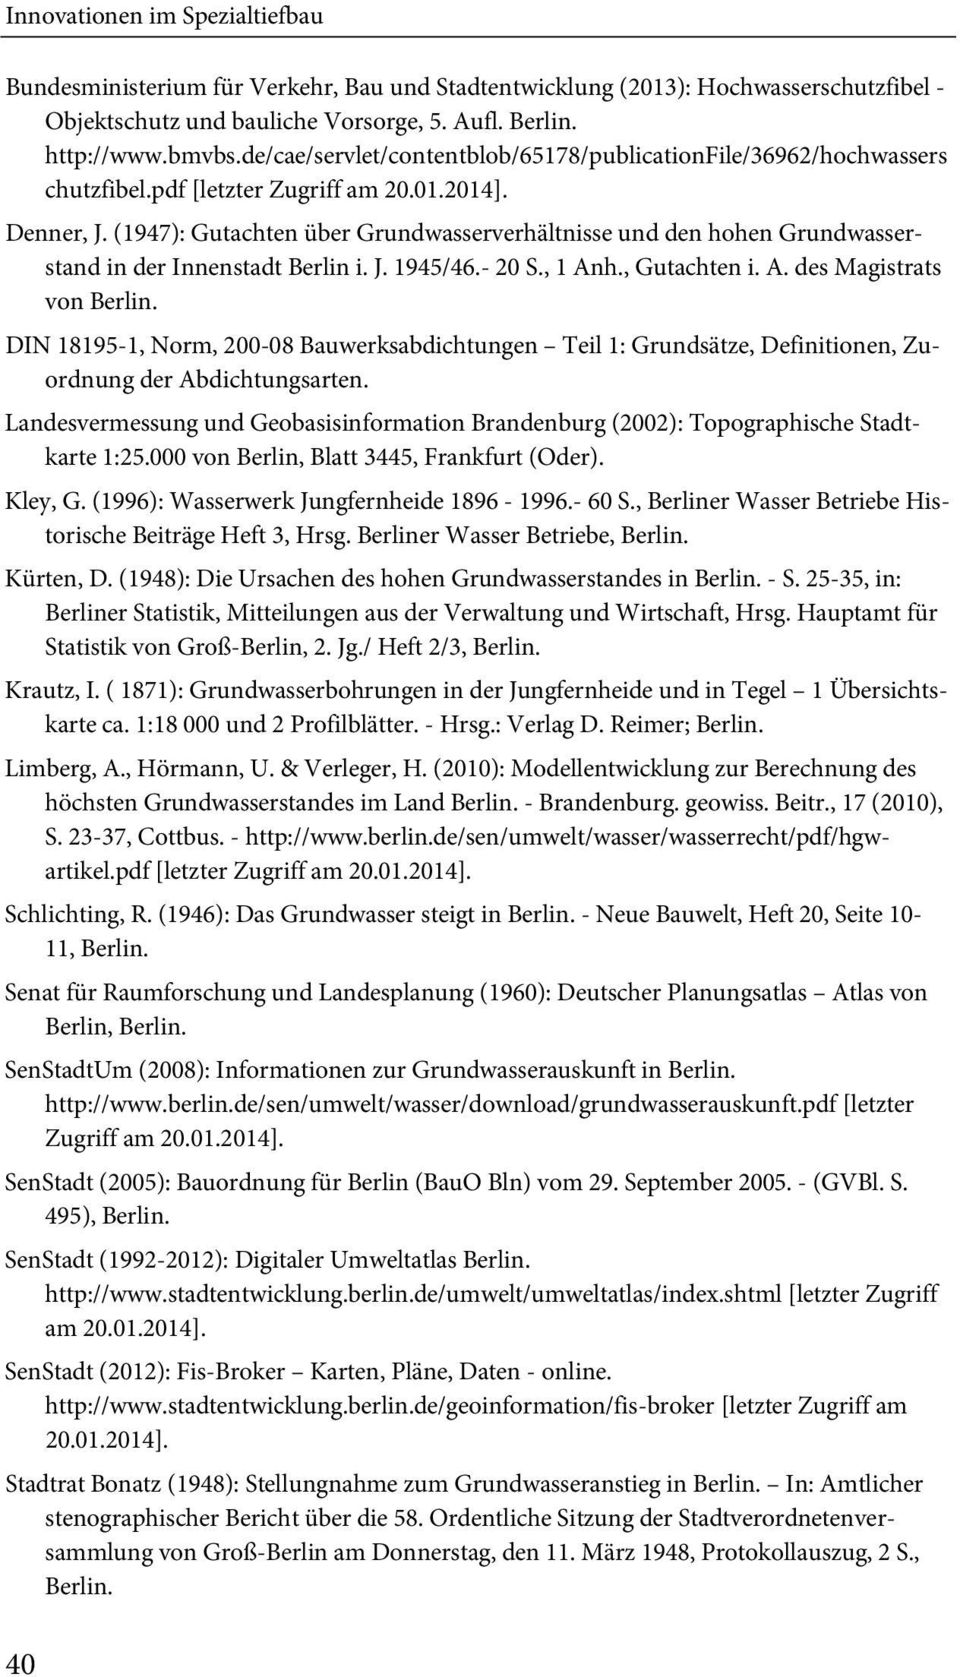 (1947): Gutachten über Grundwasserverhältnisse und den hohen Grundwasserstand in der Innenstadt Berlin i. J. 1945/46.- 20 S., 1 Anh., Gutachten i. A. des Magistrats von Berlin.